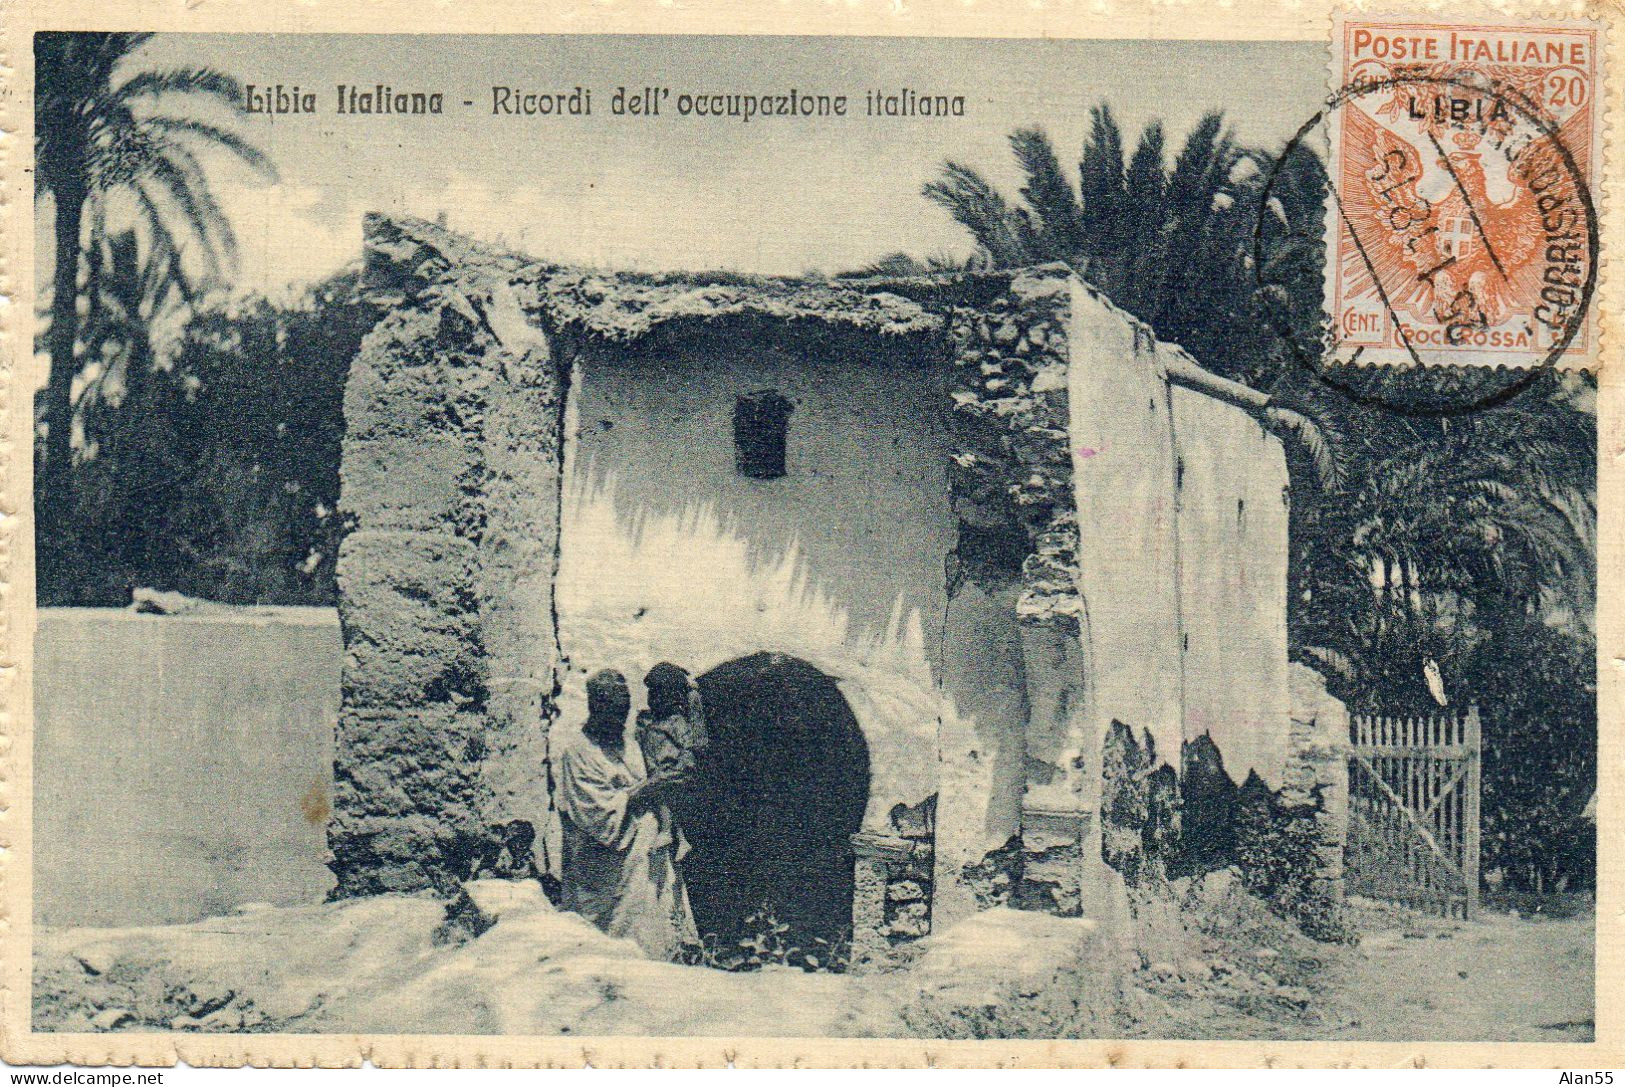 LIBYE-ITALIE.1918.CENSURE. "CROCE ROSSA" SURCHARGE "LIBIA". CROIX-ROUGE POUR LA FRANCE - Tripolitaine